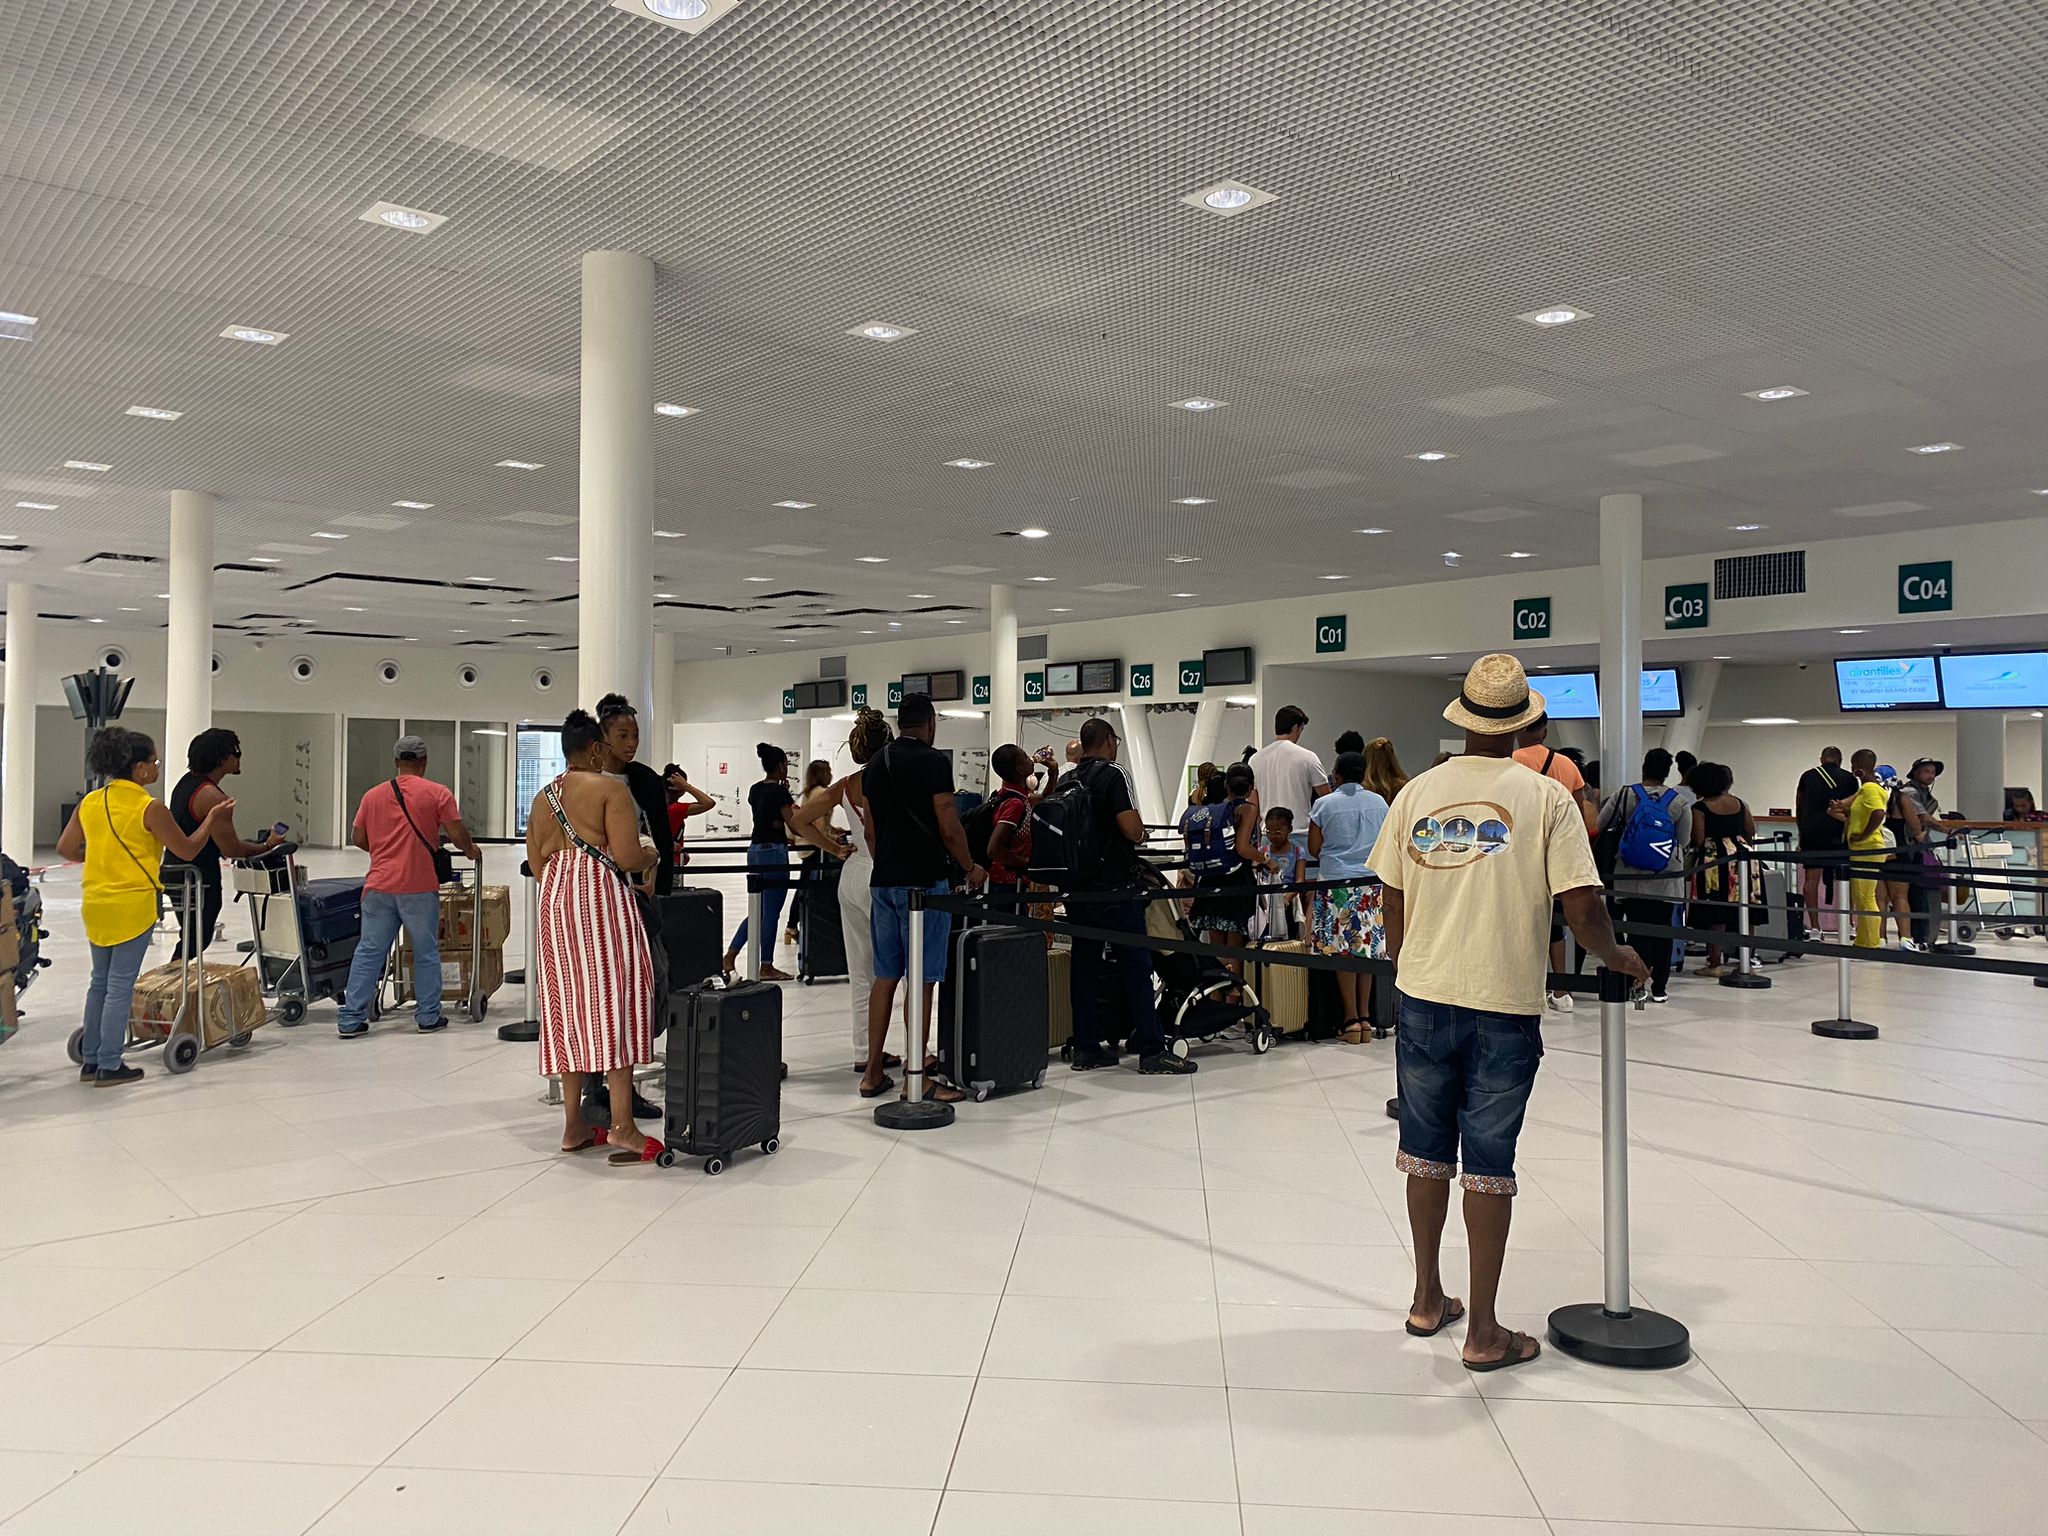     Des perturbations sur le réseau aérien régional Martinique / Guadeloupe

